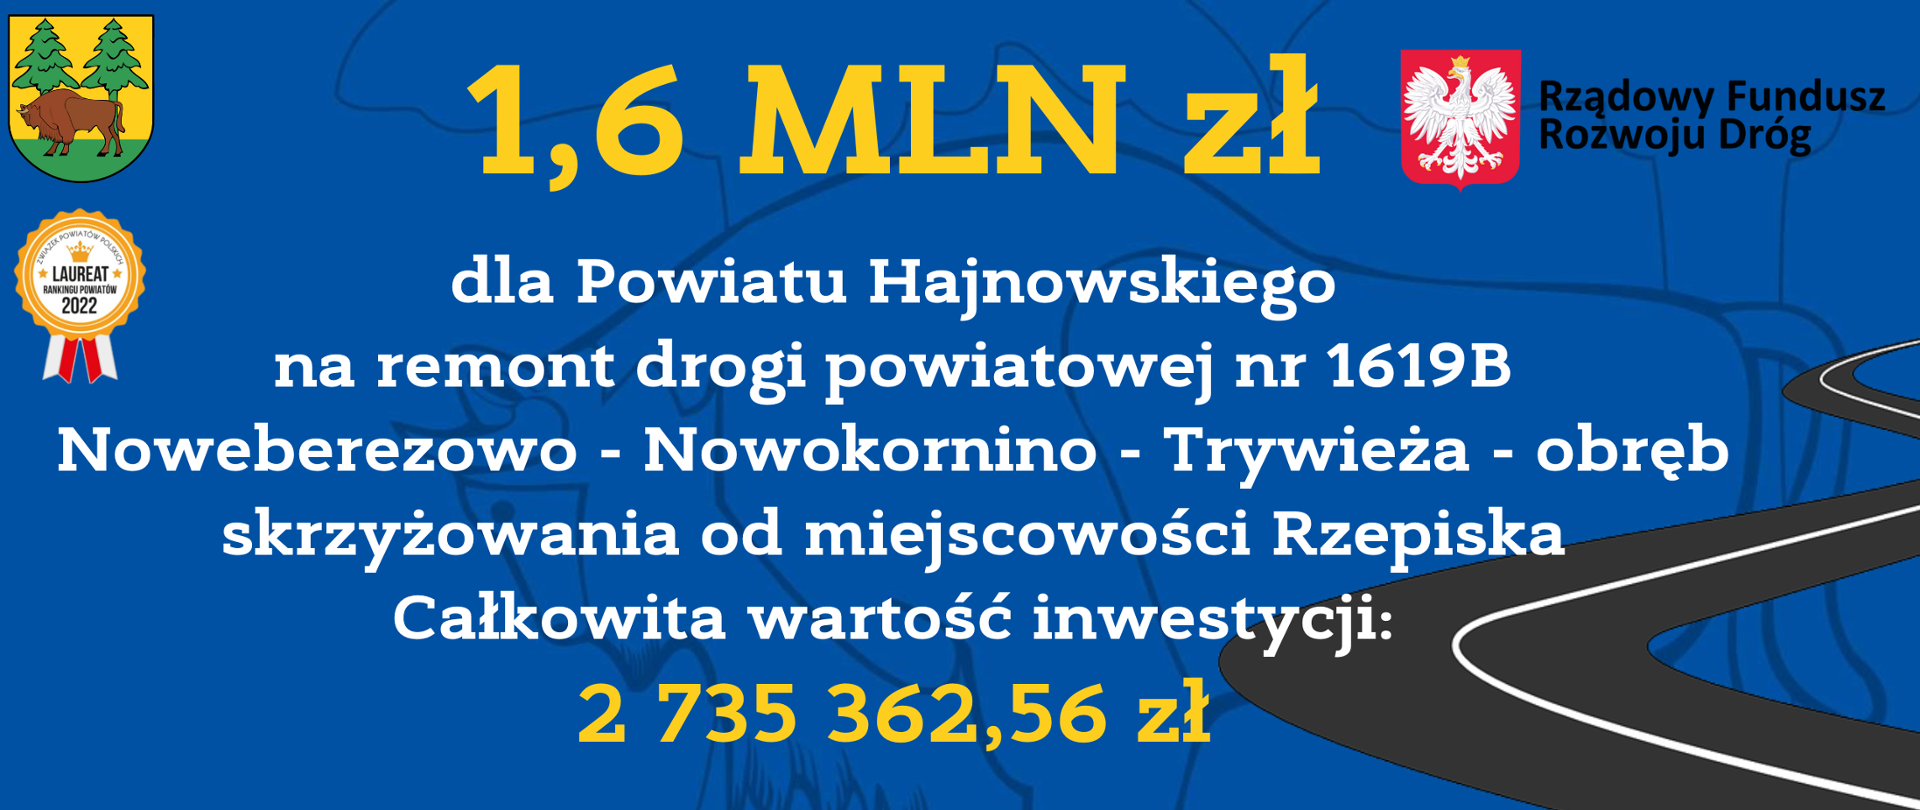 1,6 MLN zł dla Powiatu Hajnowskiego na remont drogi powiatowej nr 1619B Noweberezowo - Nowokornino - Trywieża - obręb skrzyżowania od miejscowości Rzepiska. Całkowita wartość inwestycji: 2 735 362,56 zł